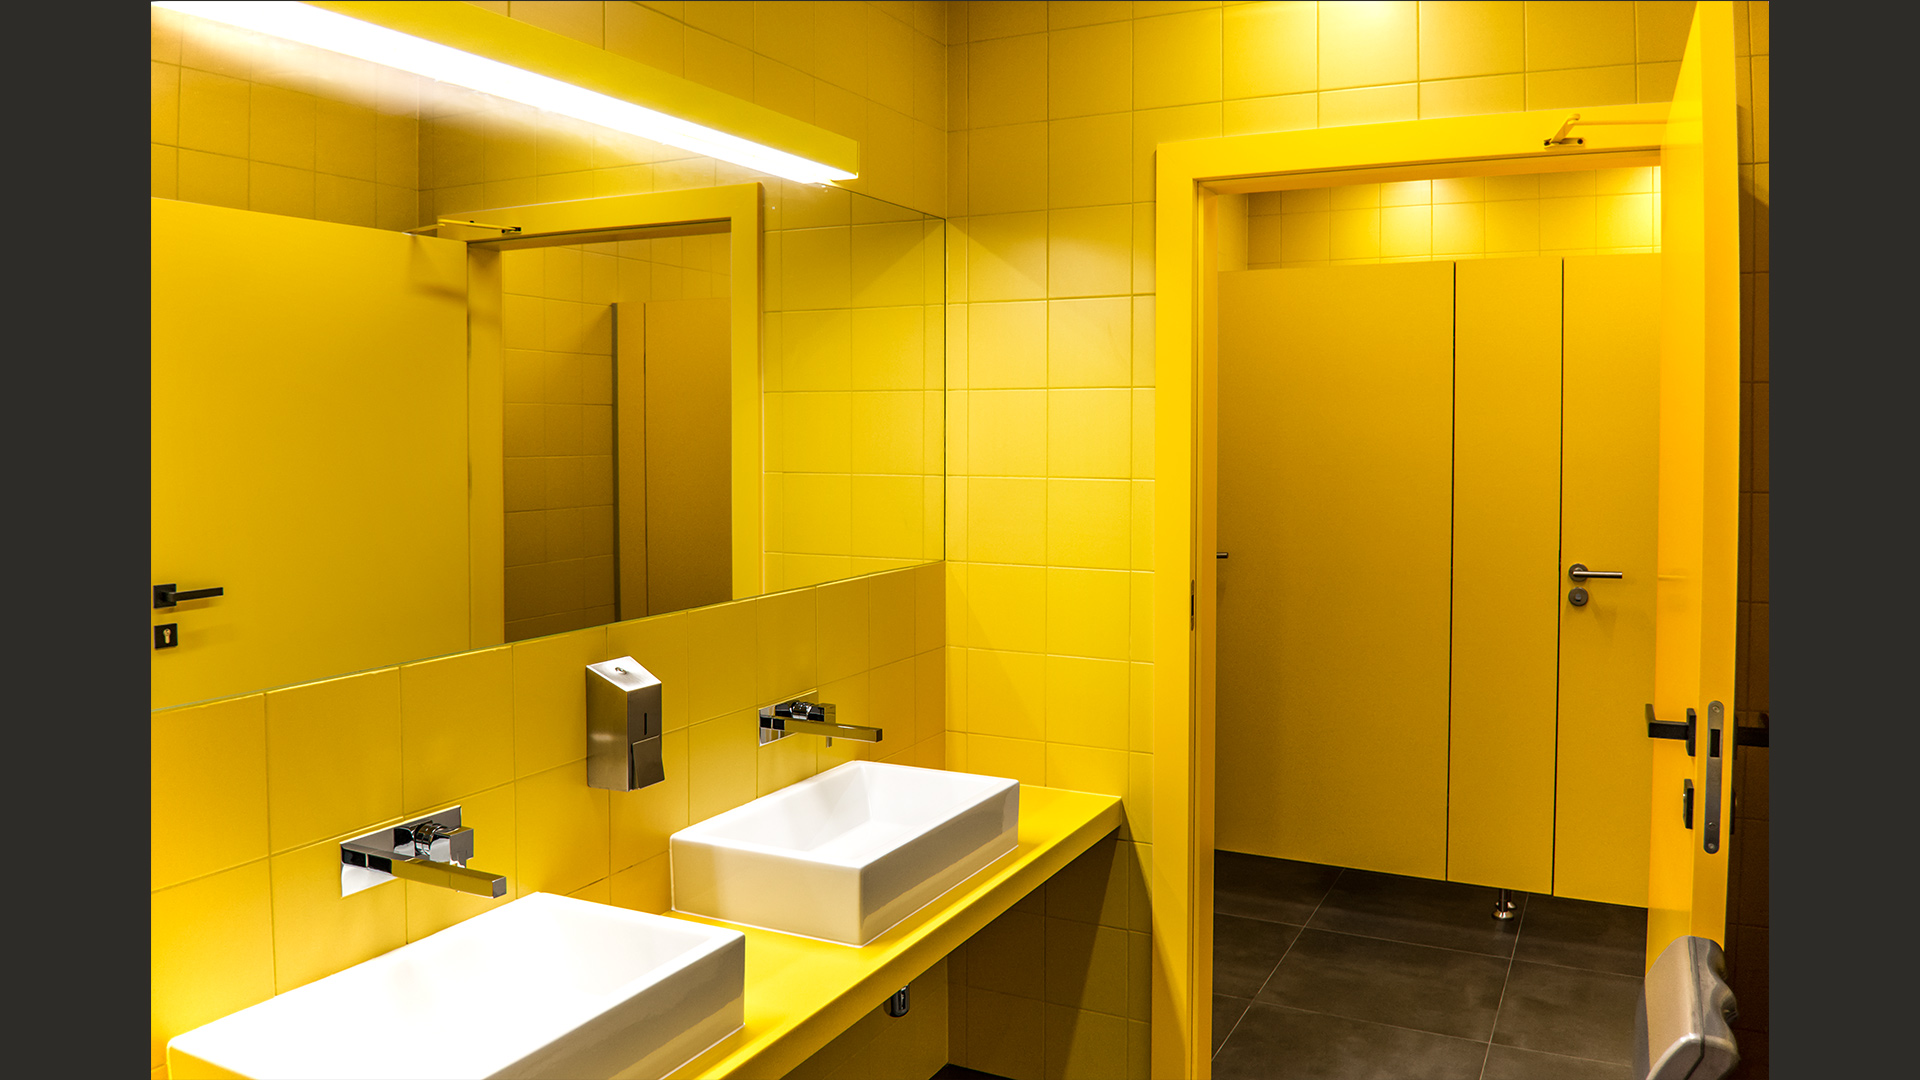 Prosty zabieg konsekwentnego użycia jednego koloru sprawił, że – przy niewielkim budżecie realizacyjnym – powstało bardzo wyraziste wnętrze. Na zdjęciu – damskie toalety.